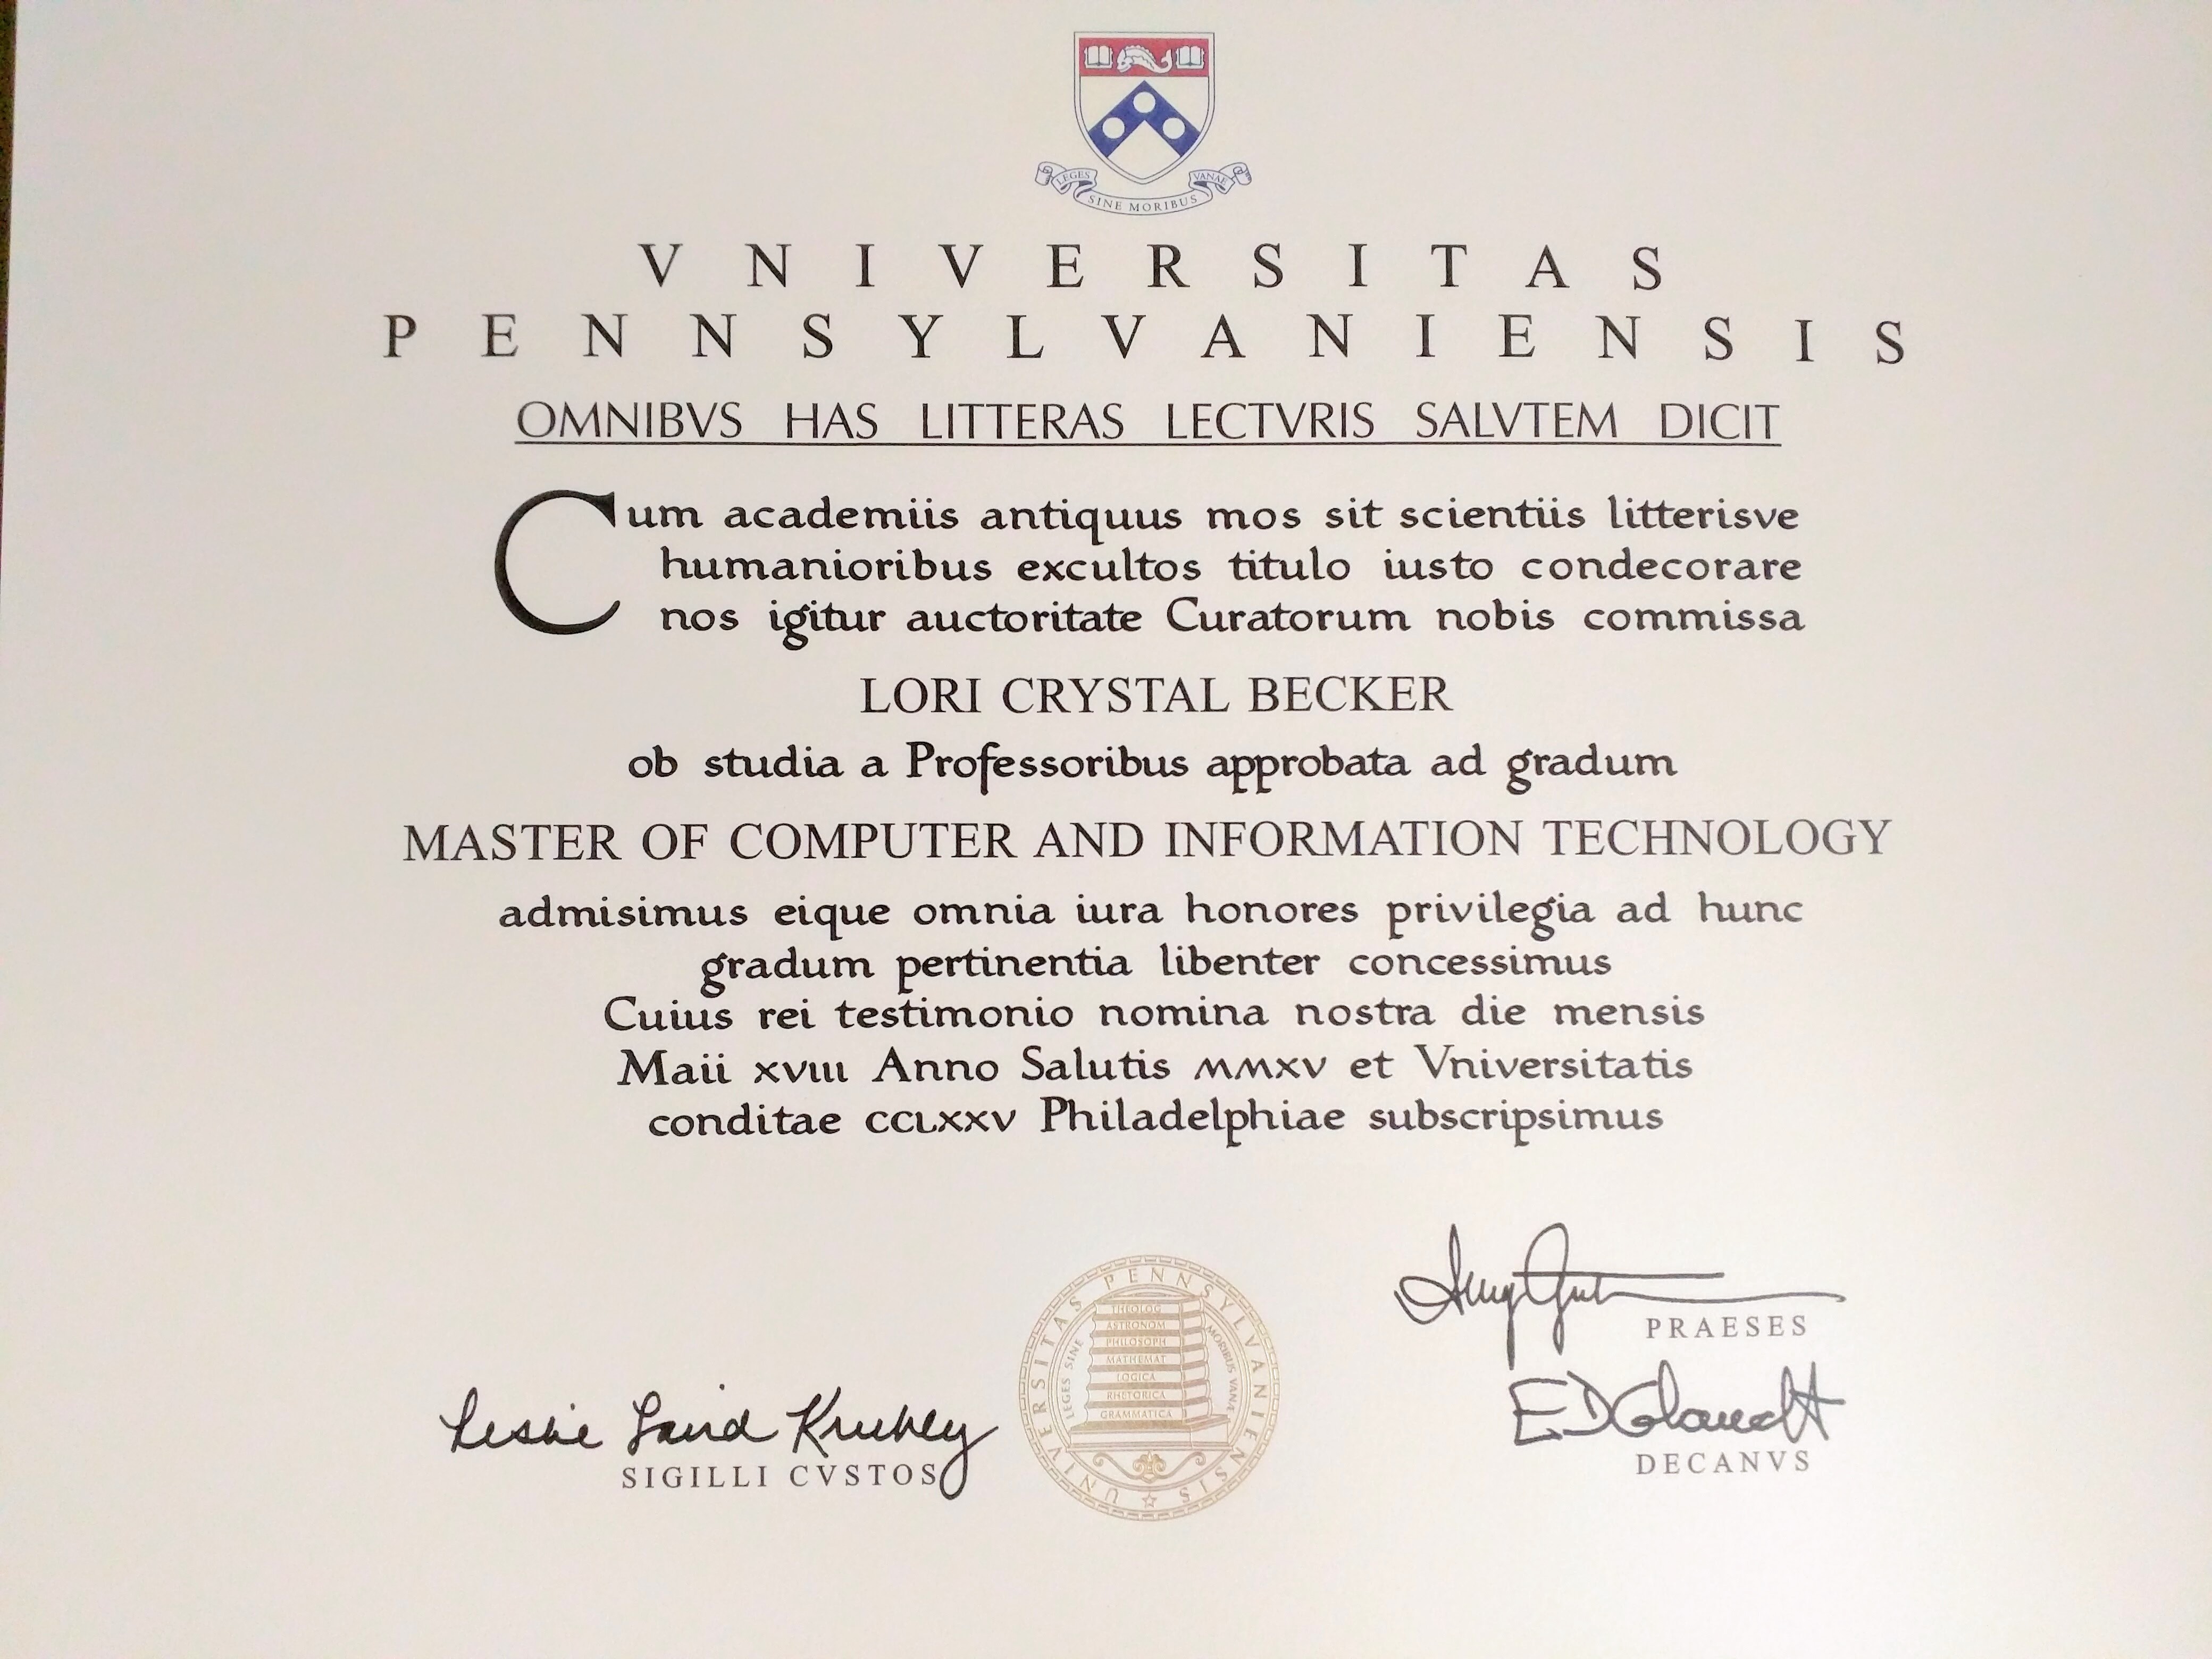 UPenn Diploma